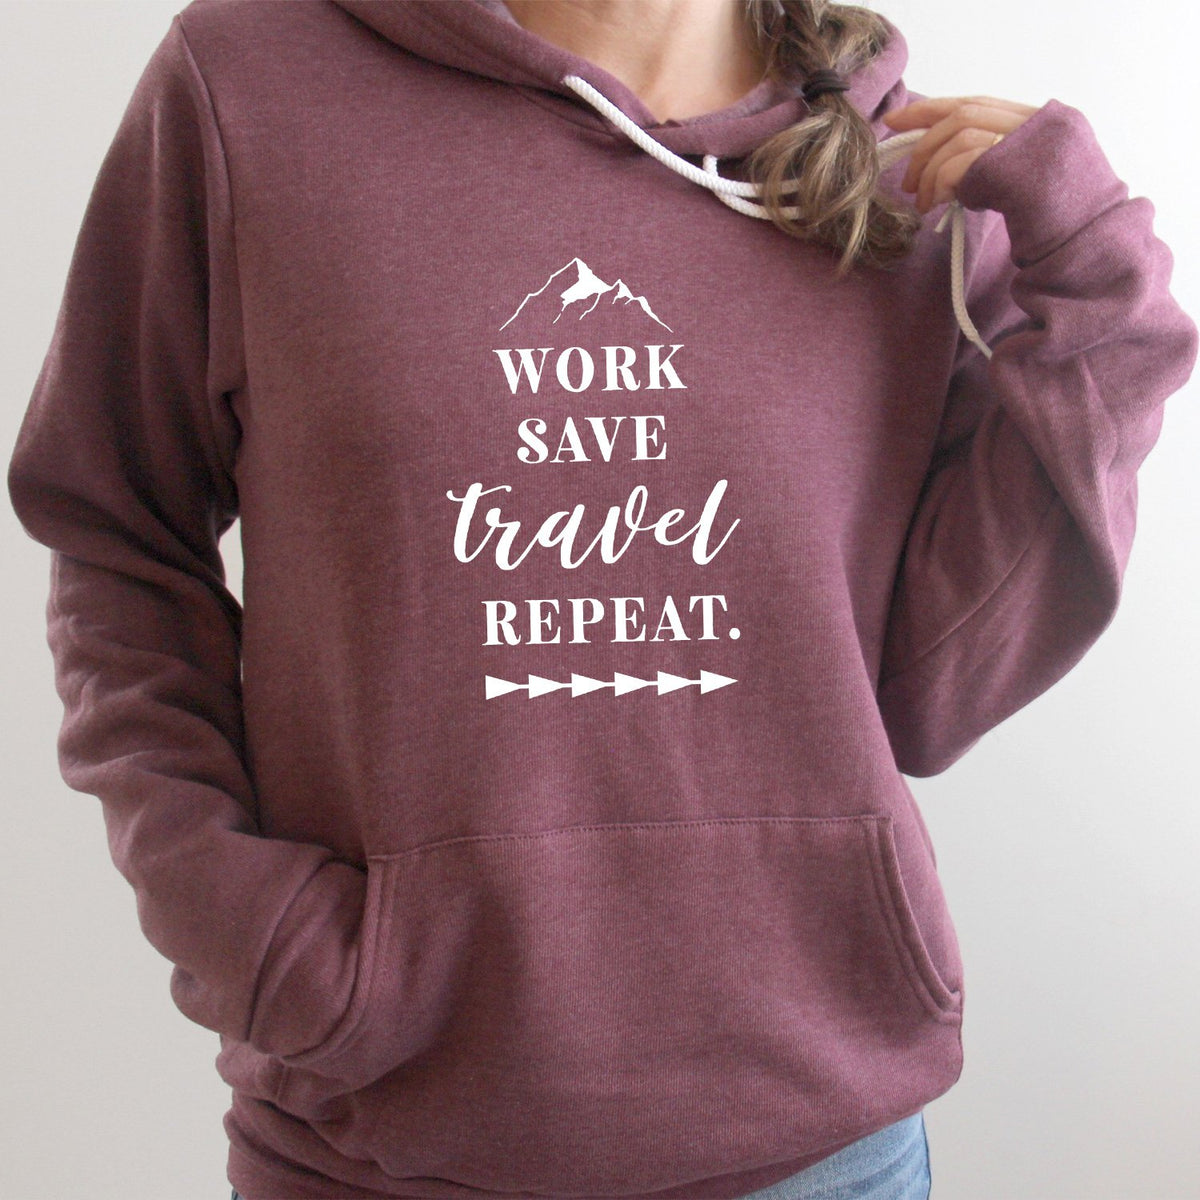 Work Save Travel Repeat - Hoodie Sweatshirt